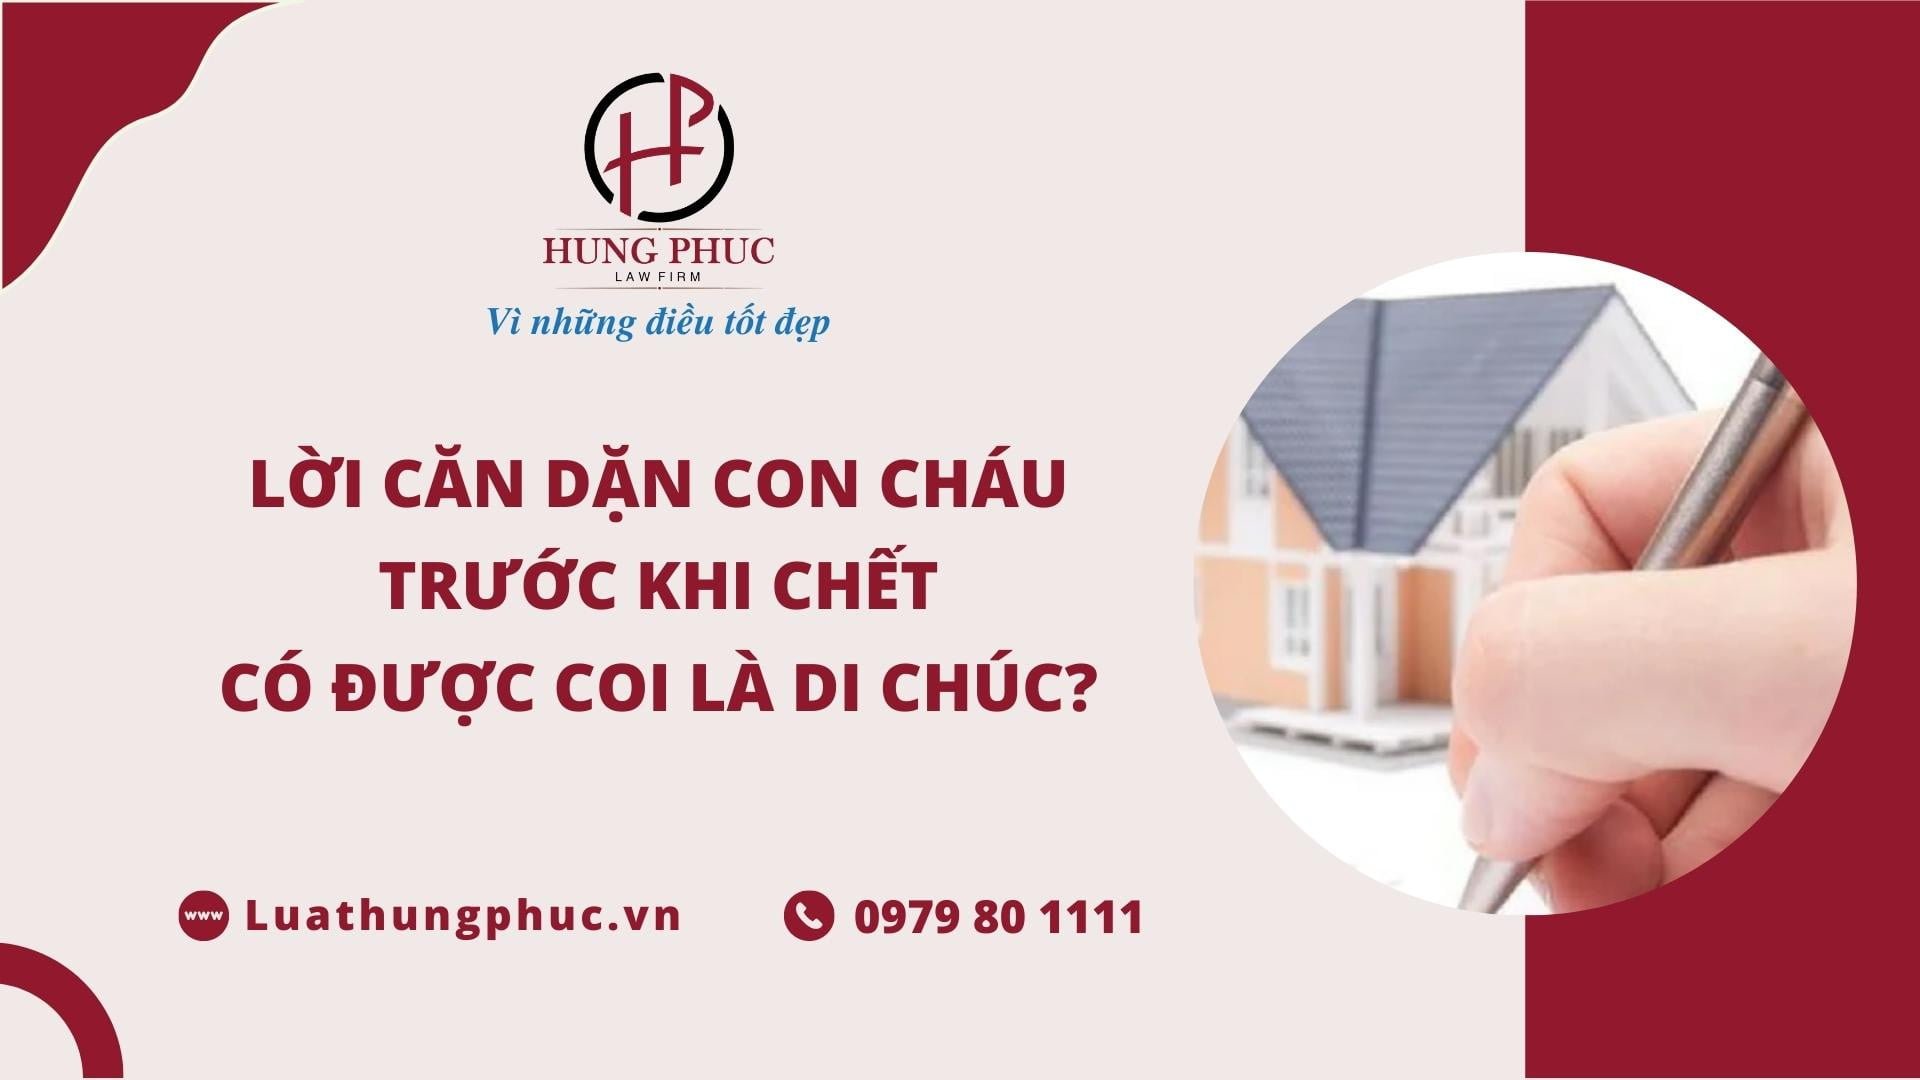 Loi Can Dan Con Chau Truoc Khi Chet Co Duoc Coi La Di Chuc